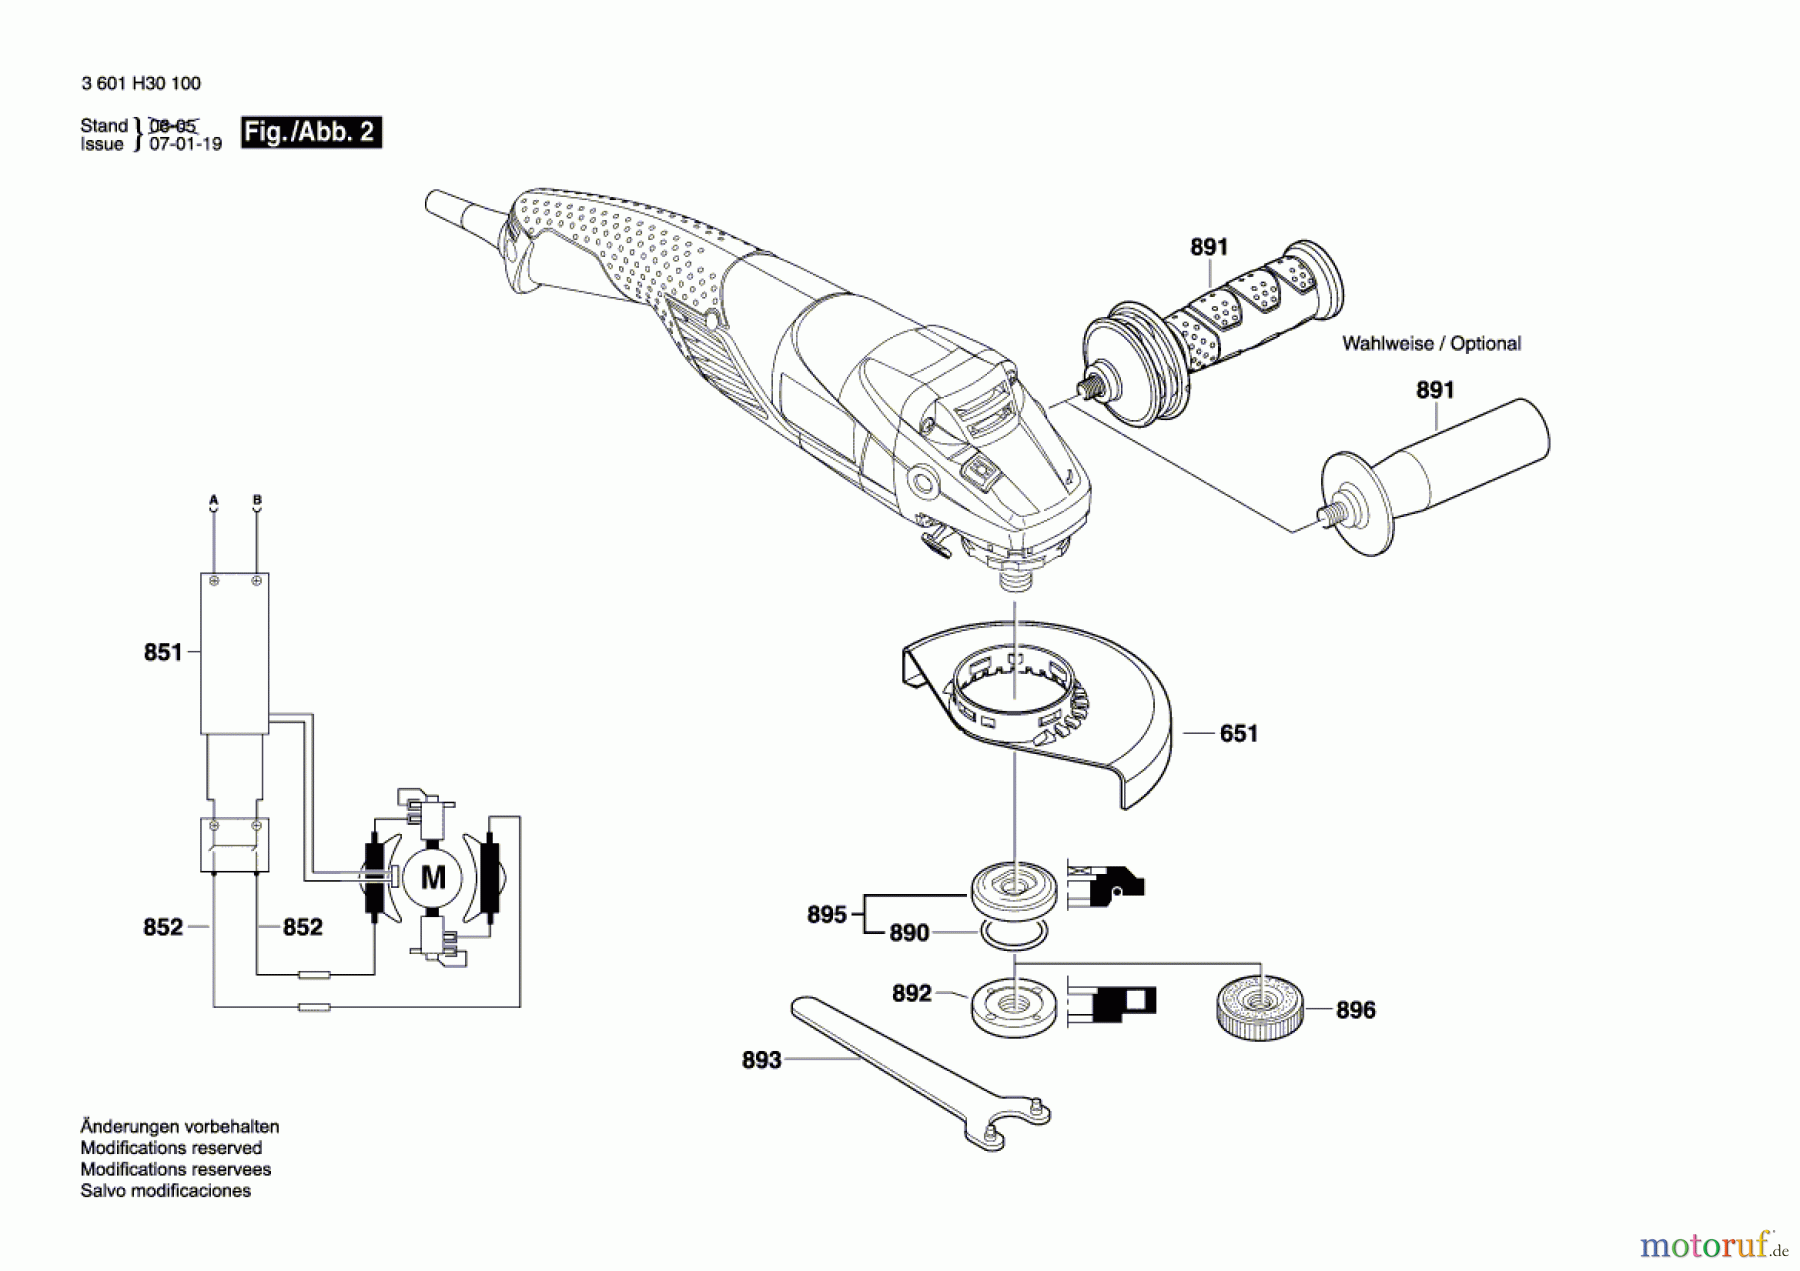  Bosch Werkzeug Winkelschleifer GWS 11-125 CIH Seite 2